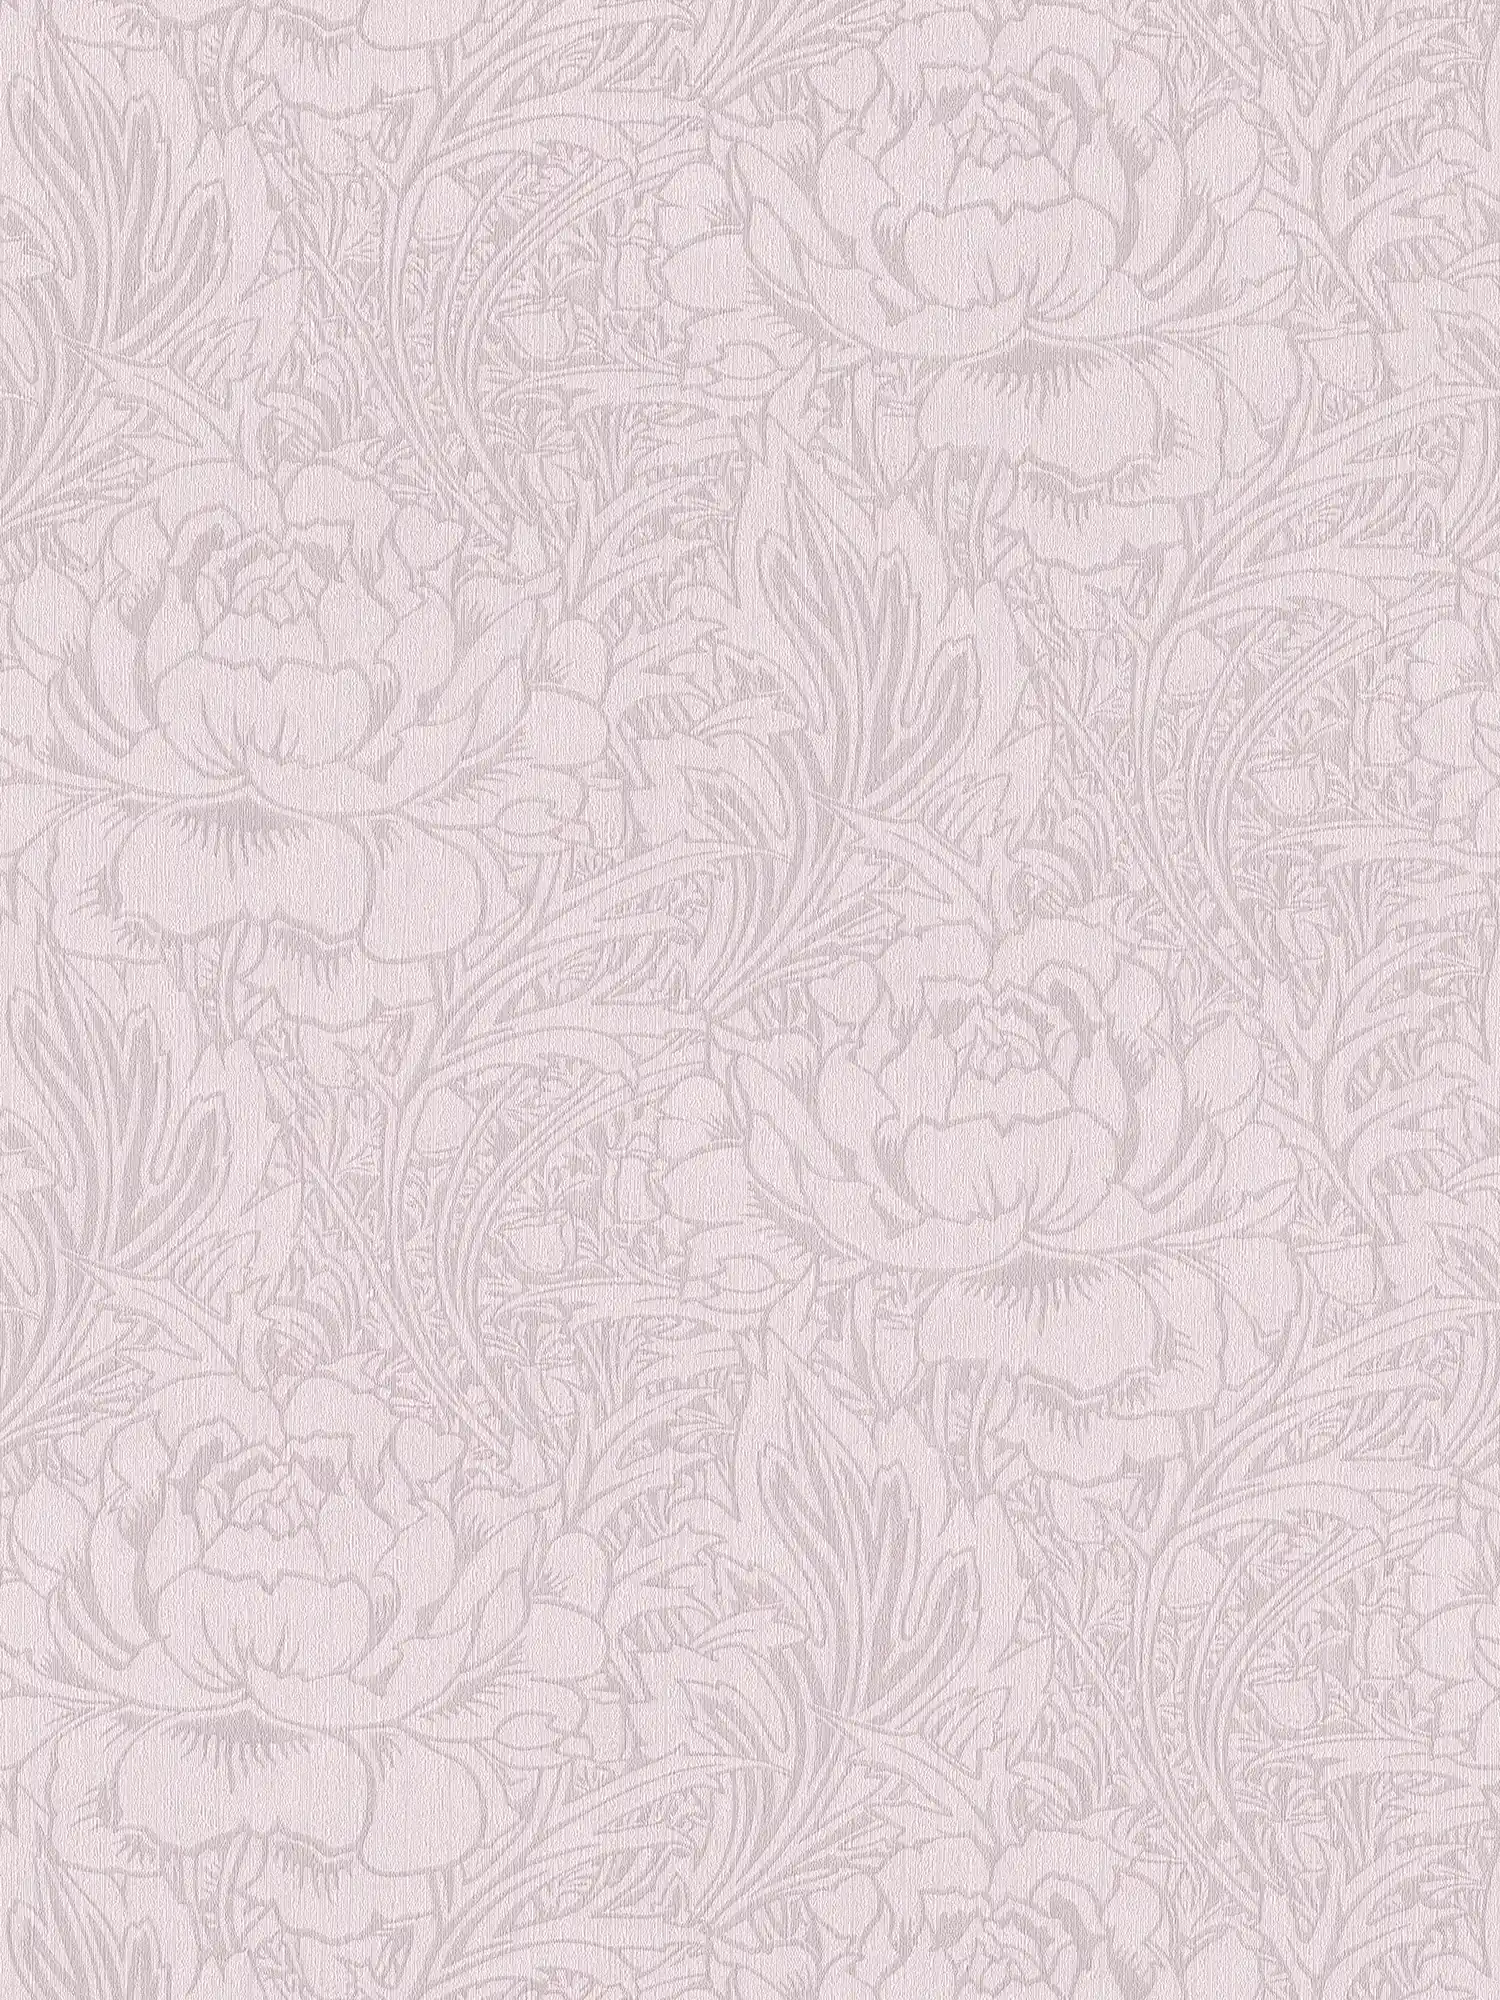 Bloemen behang art nouveau patroon, effen & mat
